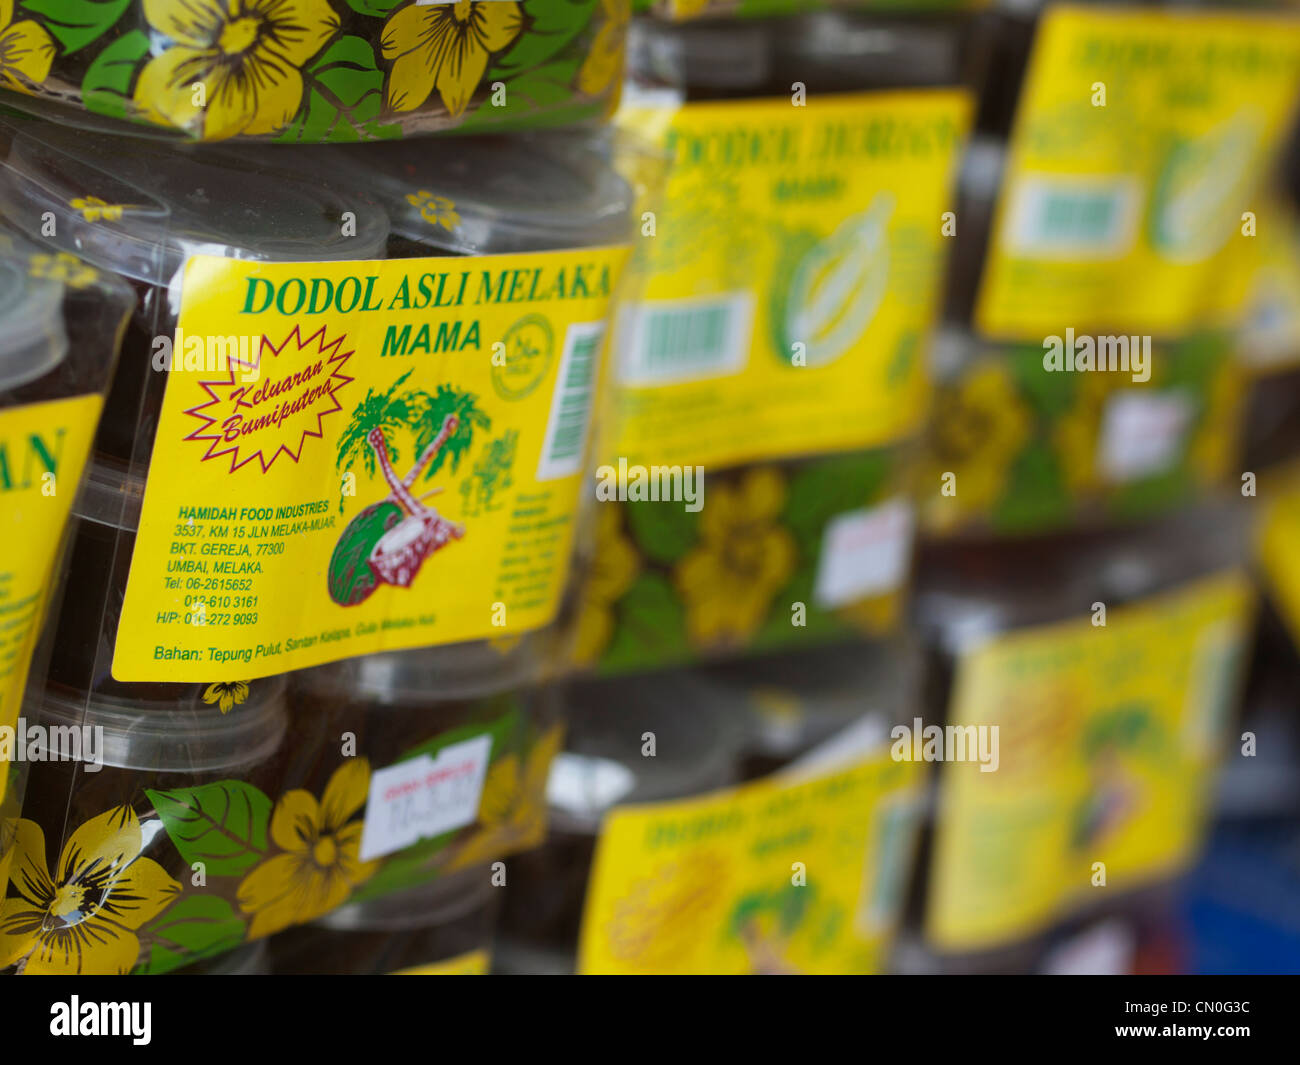 Malaysian dodol sweets Stock Photo